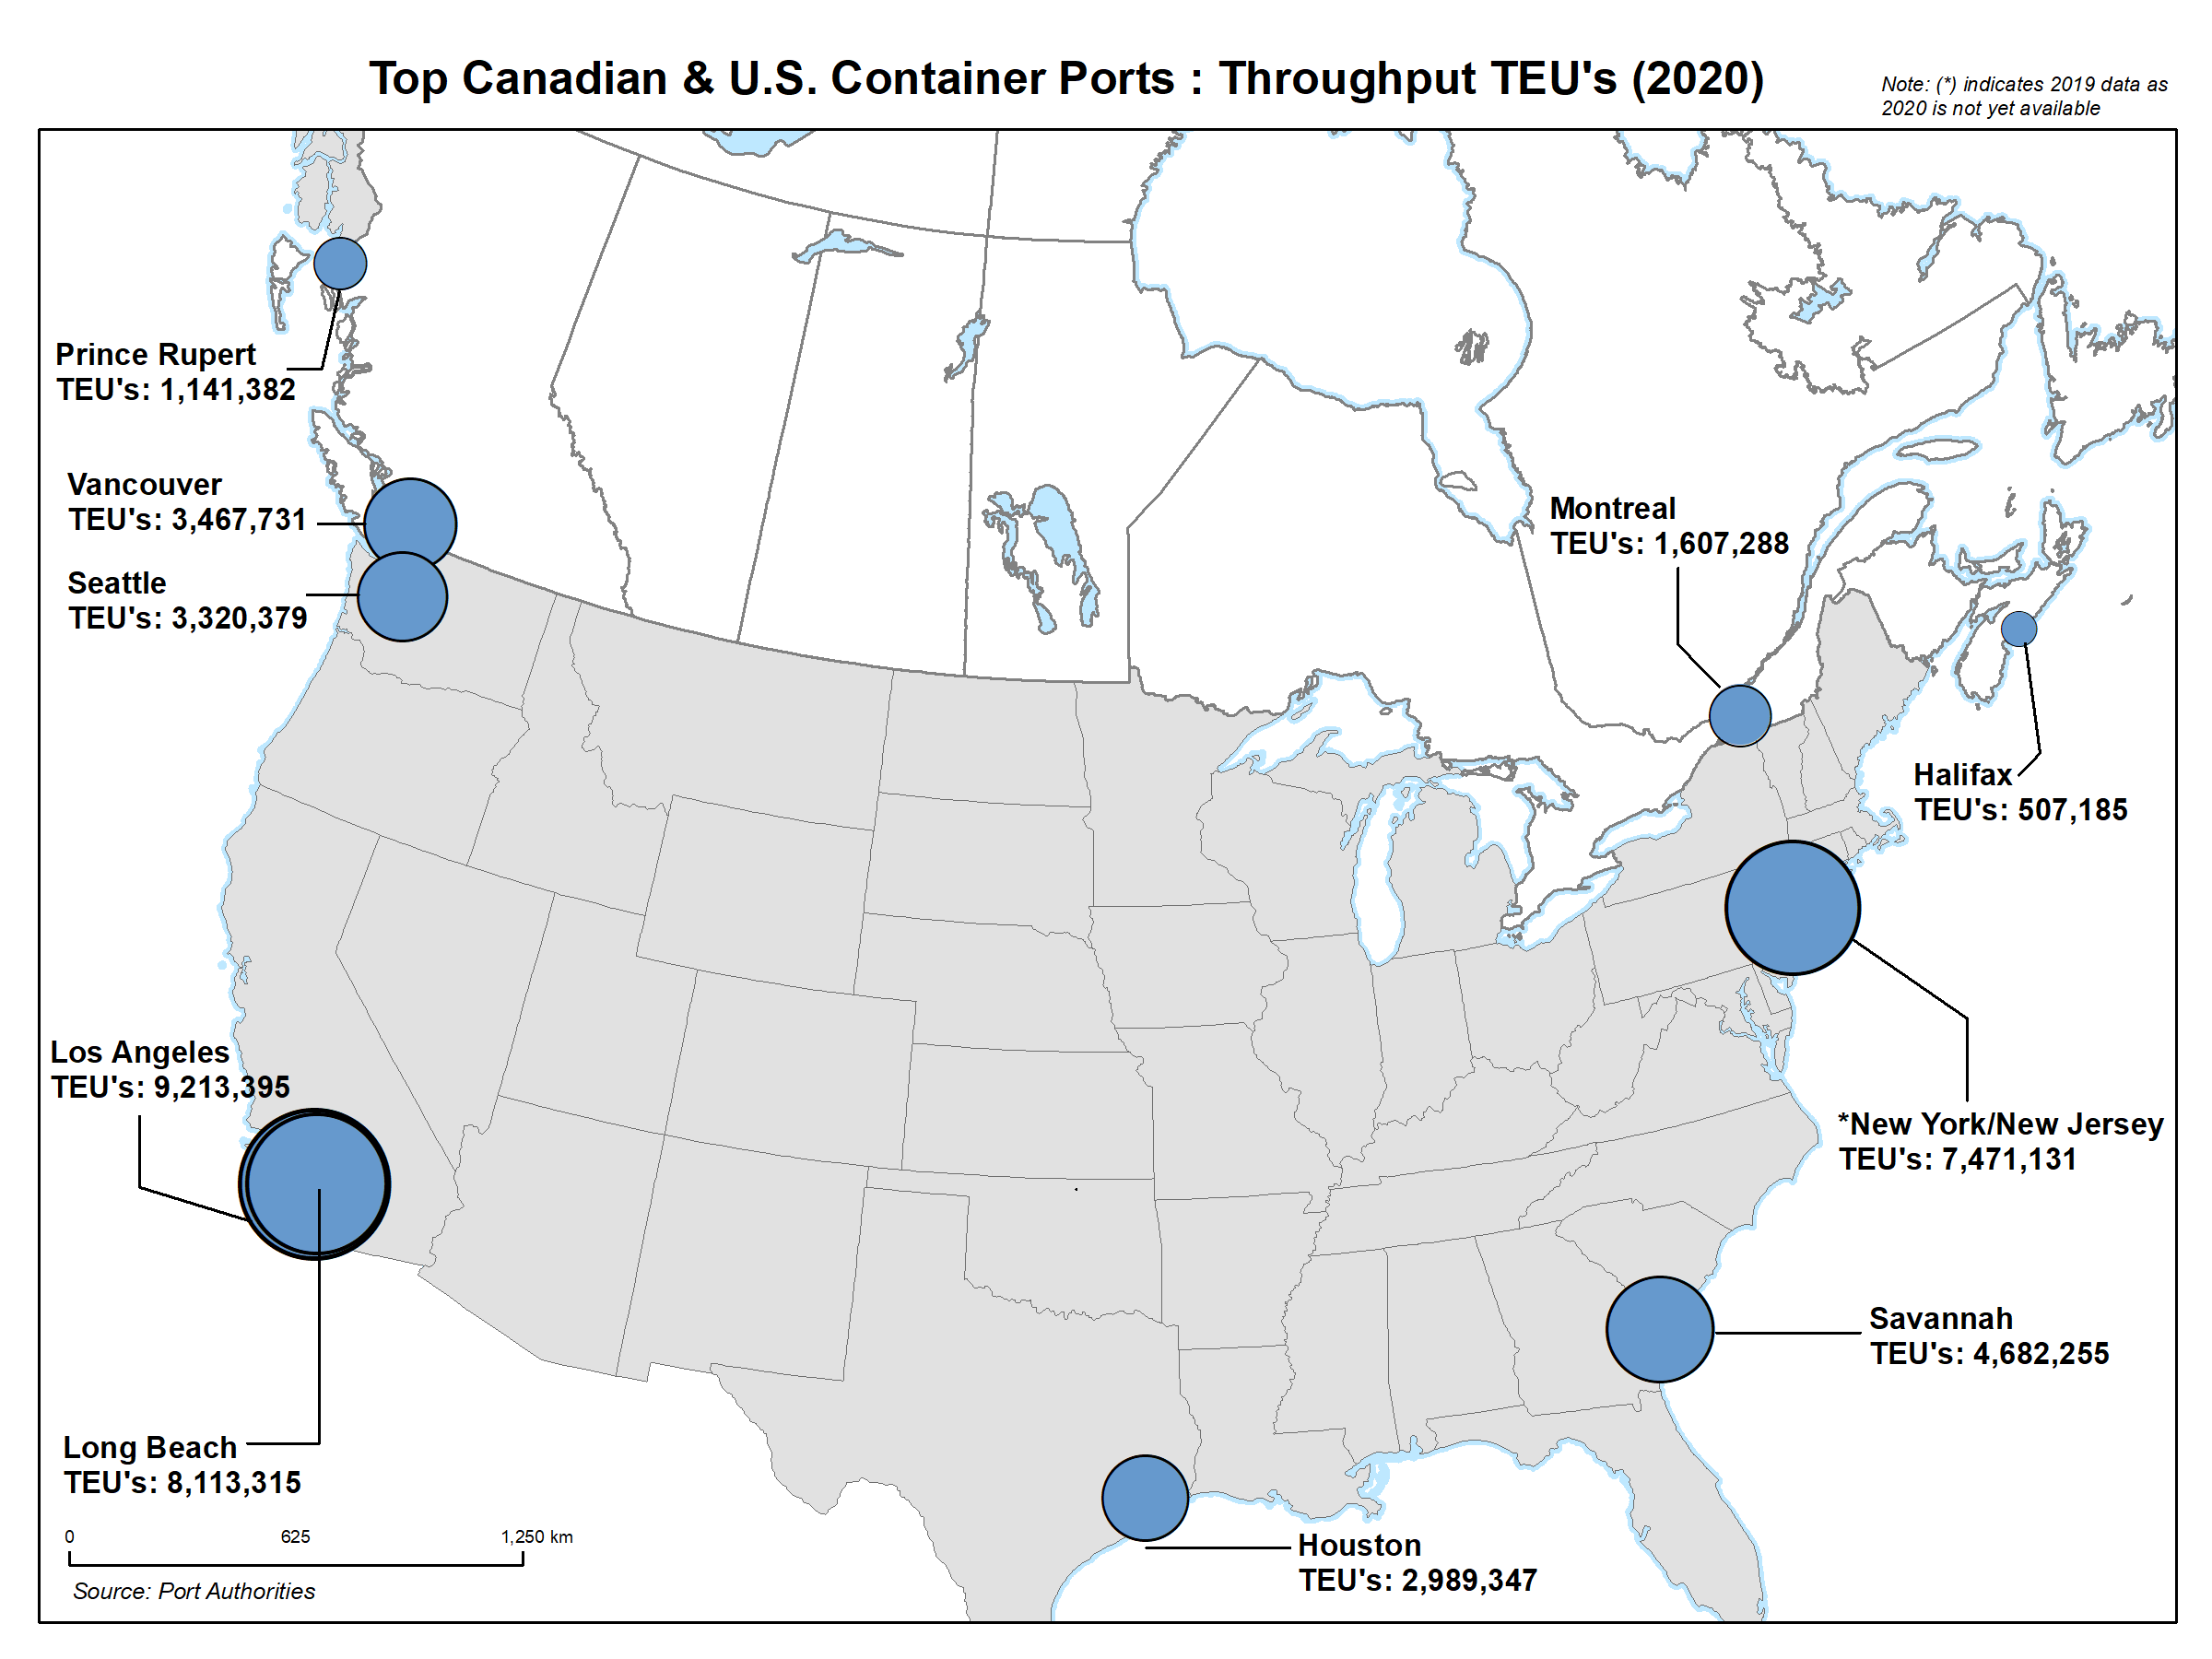 Top Canadian & U.S. Container Ports: Throughput TEU's (2000)